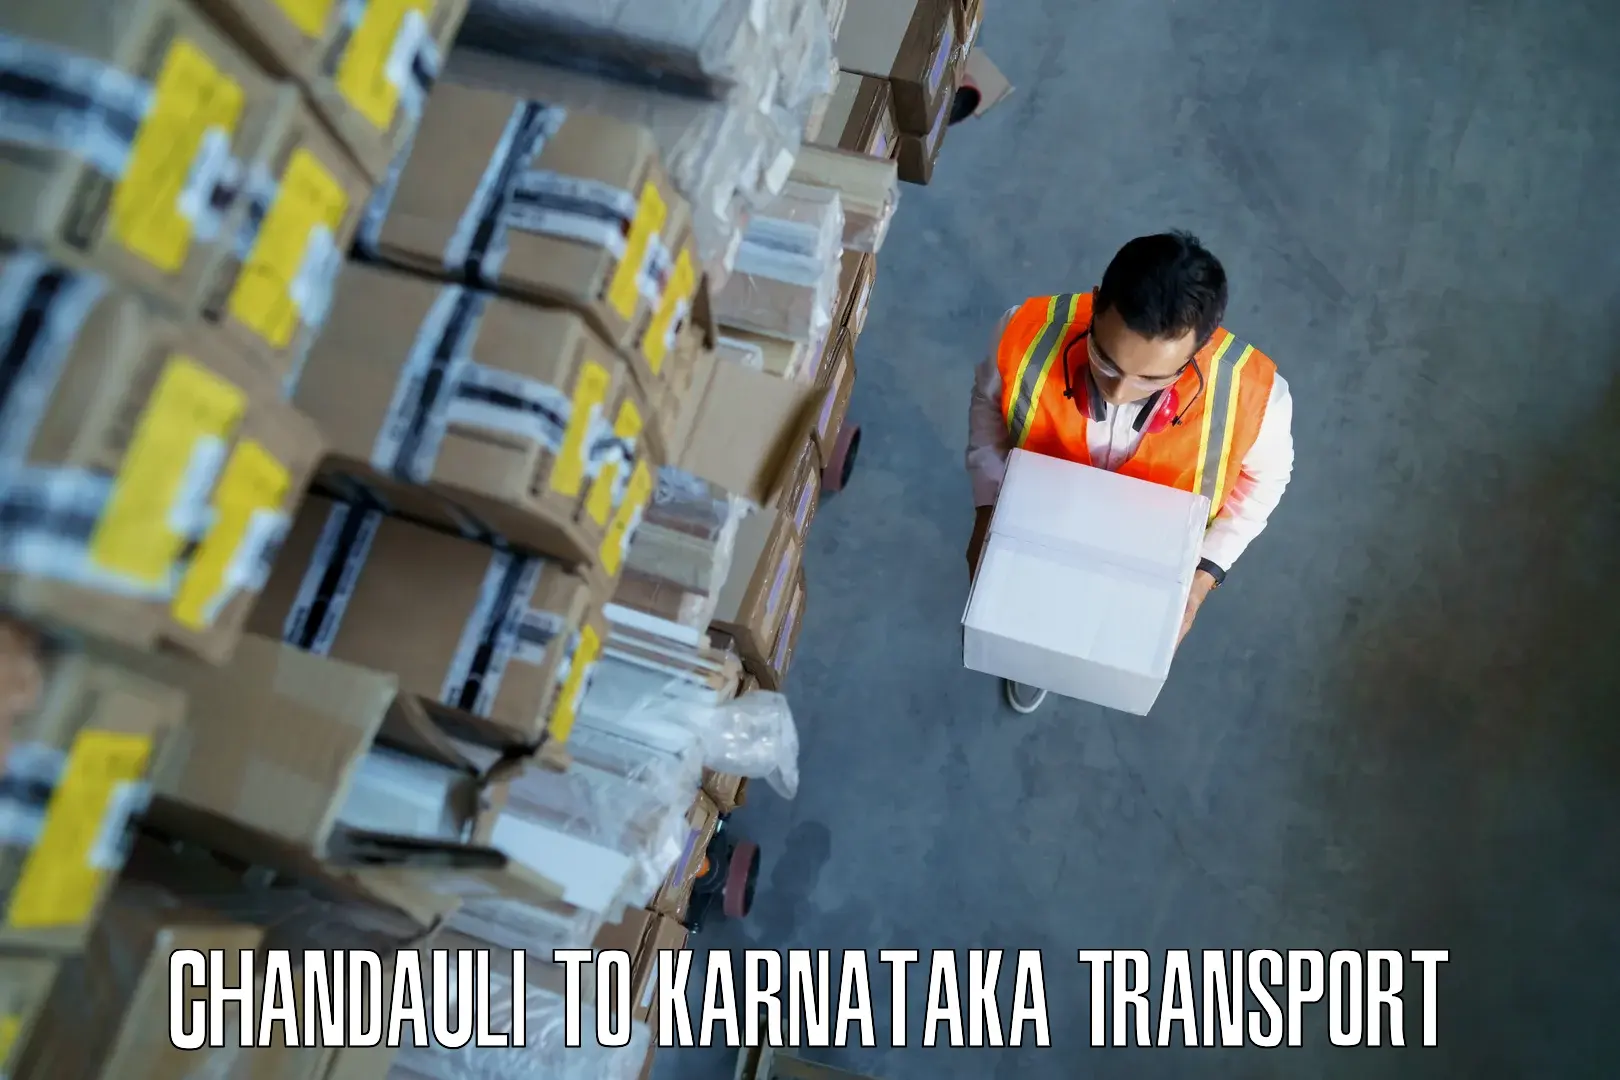 Inland transportation services Chandauli to Mangalore